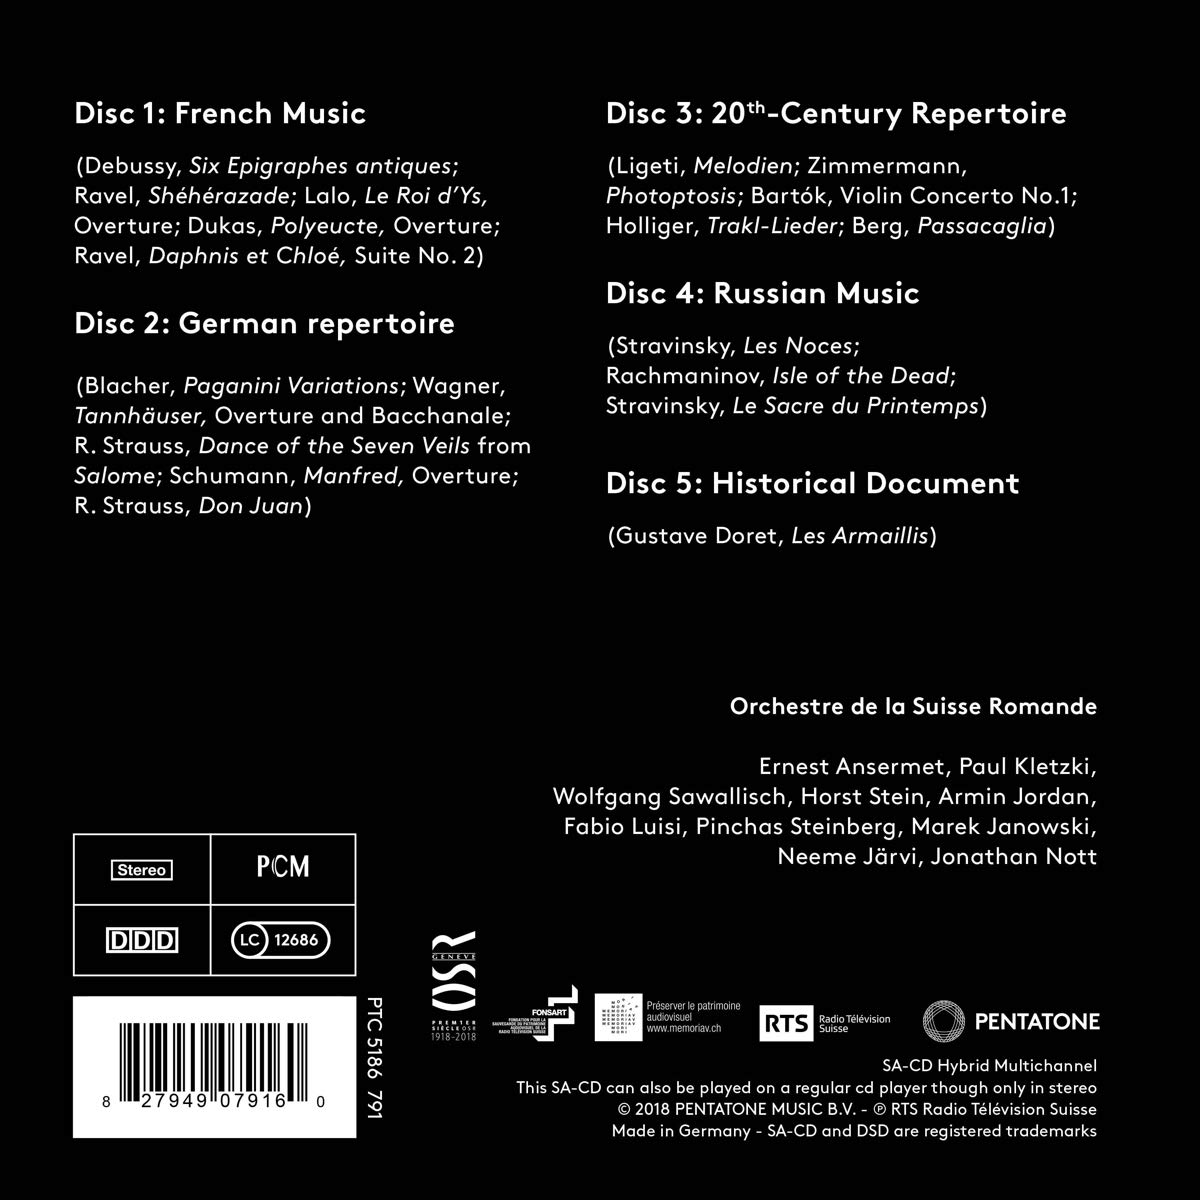 스위스 로망드 관현악단 100주년 기념 앨범 (Orchestre de la Suisse Romande - One Century of Music 1918-2018) 